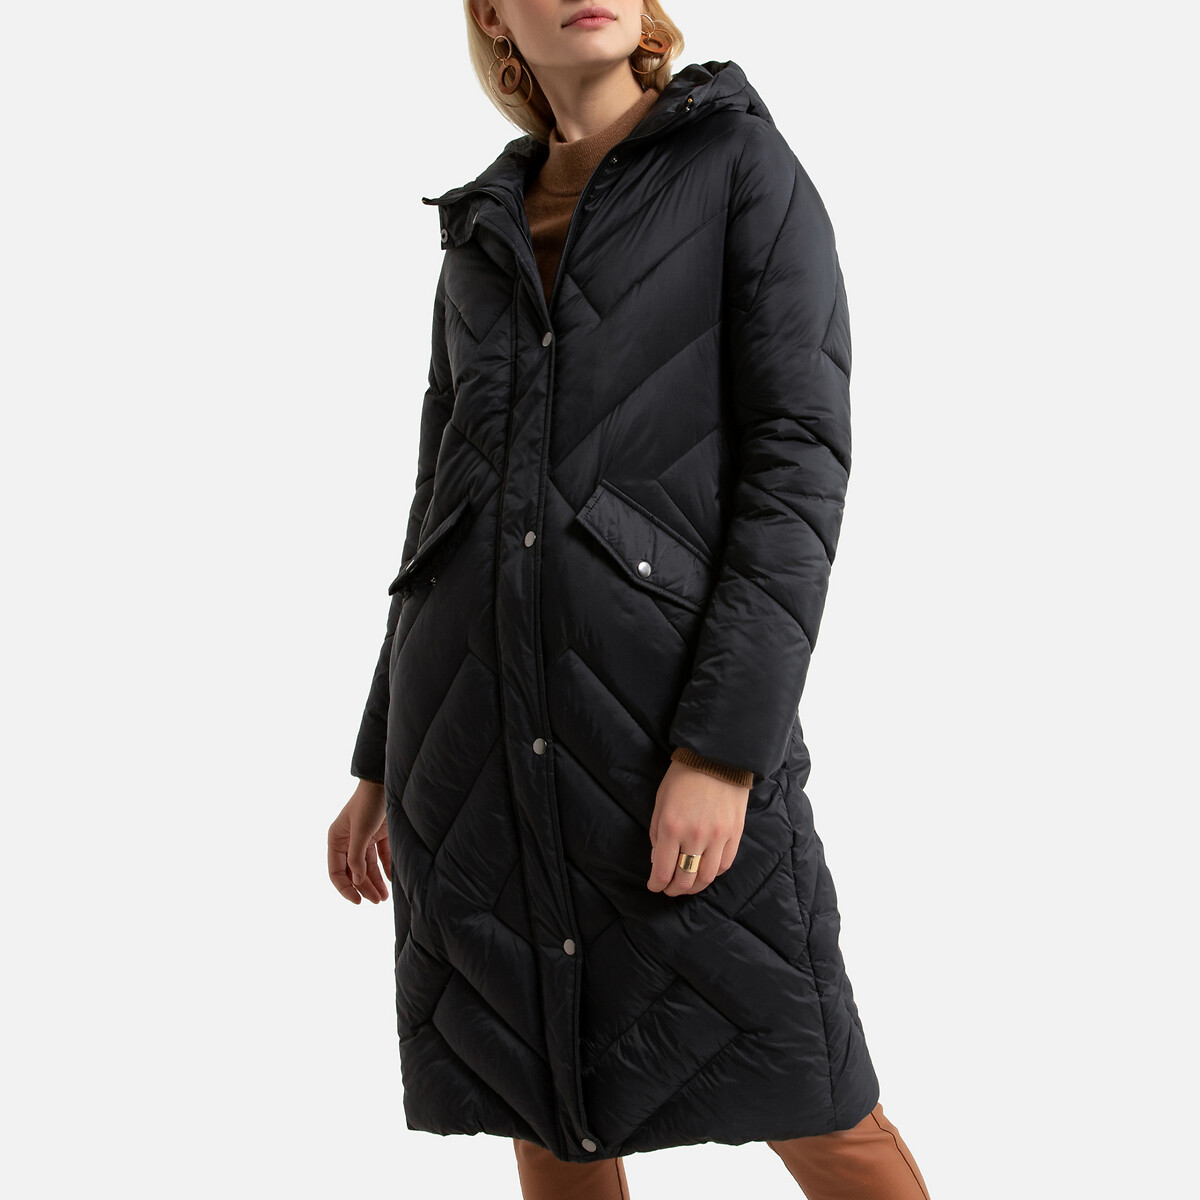 Куртка LaRedoute Стеганая длинная с капюшоном зимняя модель 54 (FR) - 60 (RUS) черный, размер 54 (FR) - 60 (RUS) Стеганая длинная с капюшоном зимняя модель 54 (FR) - 60 (RUS) черный - фото 1